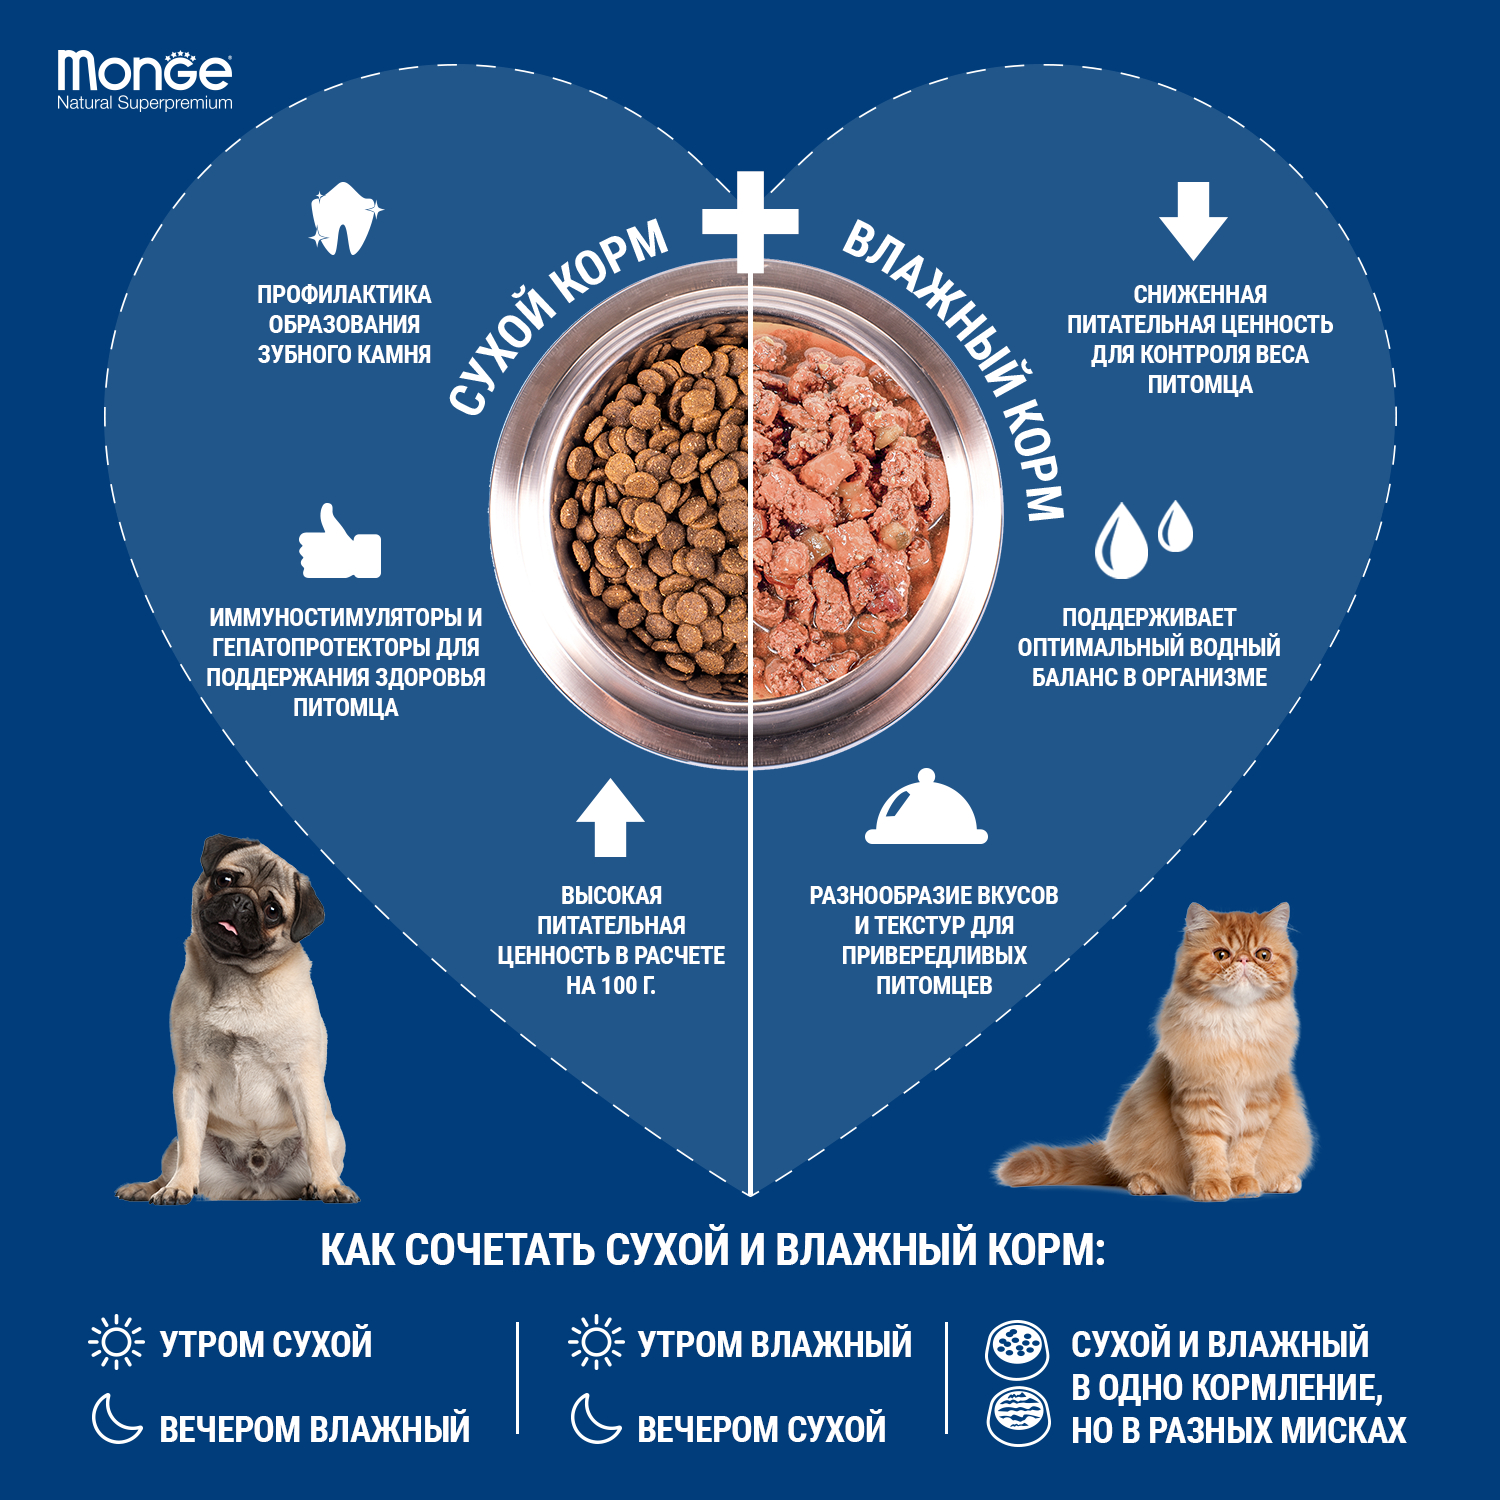 Сухой корм Monge Dog Speciality Line Monoprotein Extra Small для взрослых собак миниатюрных пород, с лососем и рисом 2,5 кг